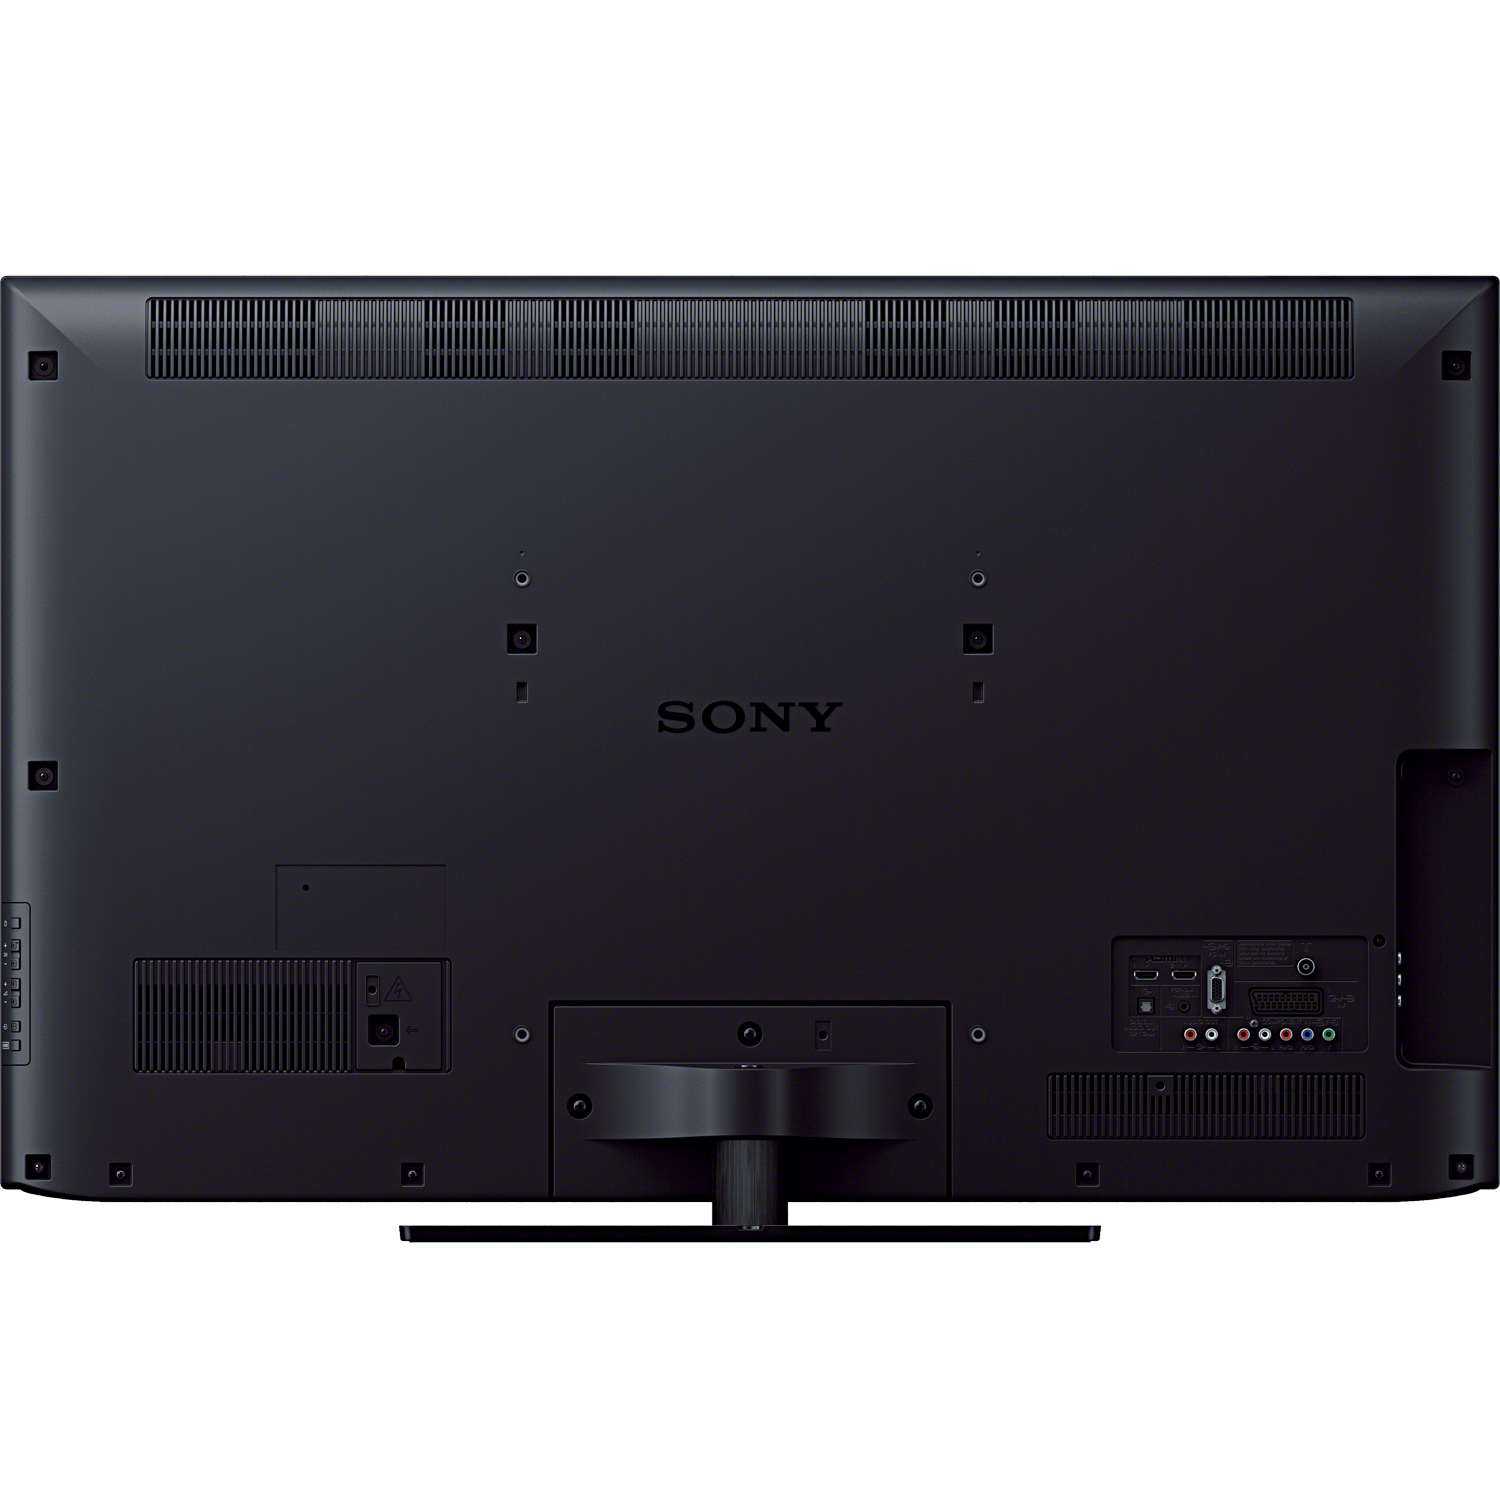 Sony kdl-32bx320